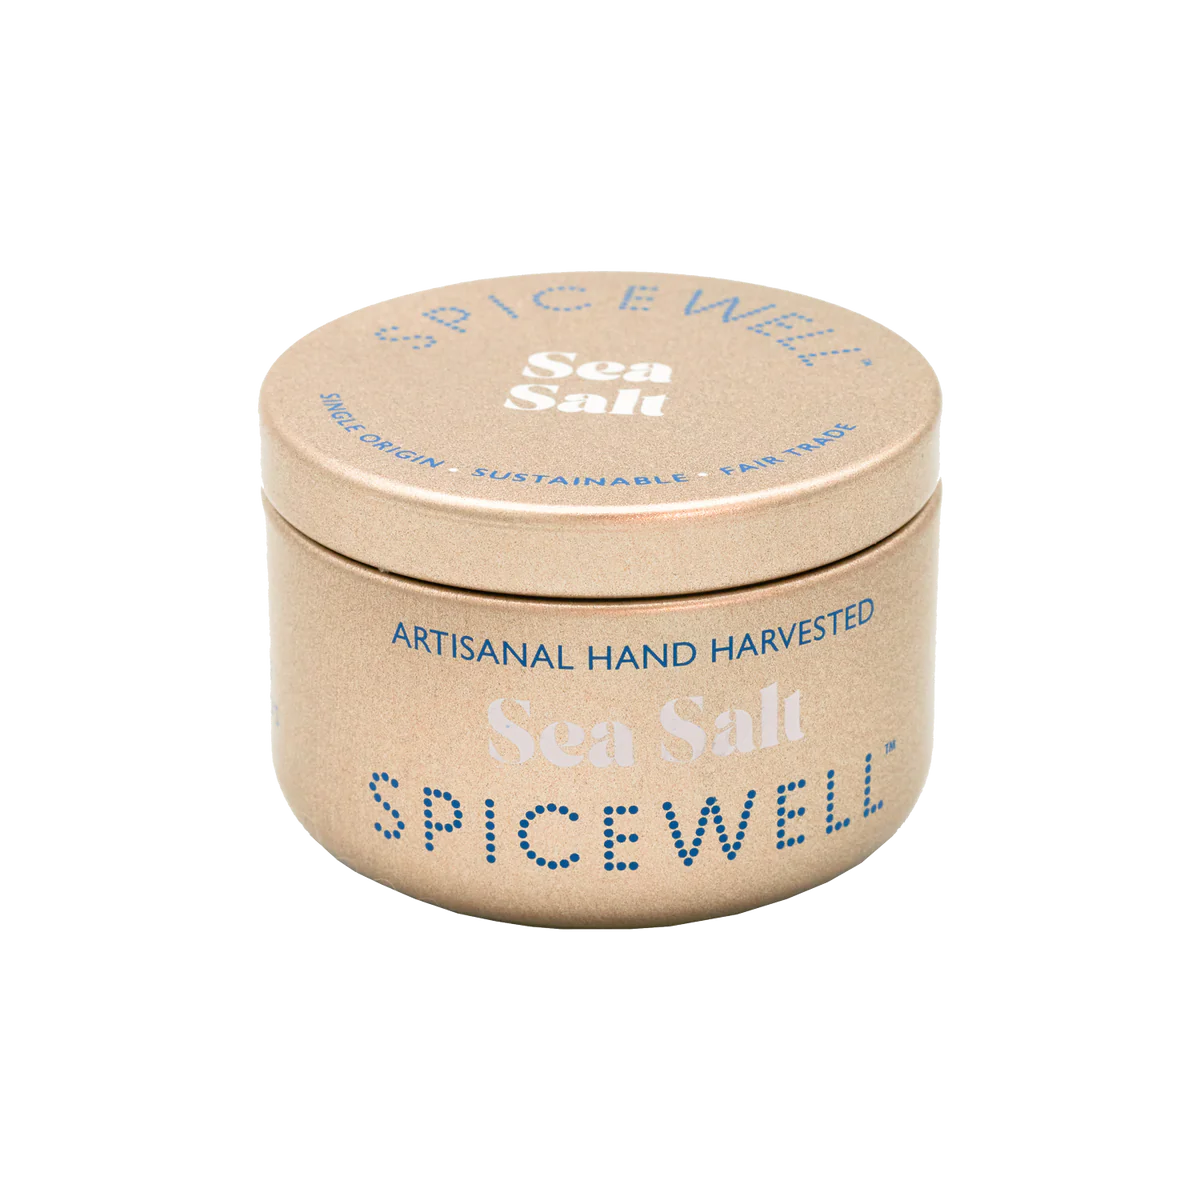 SpiceWell Sea Salt Tin Box